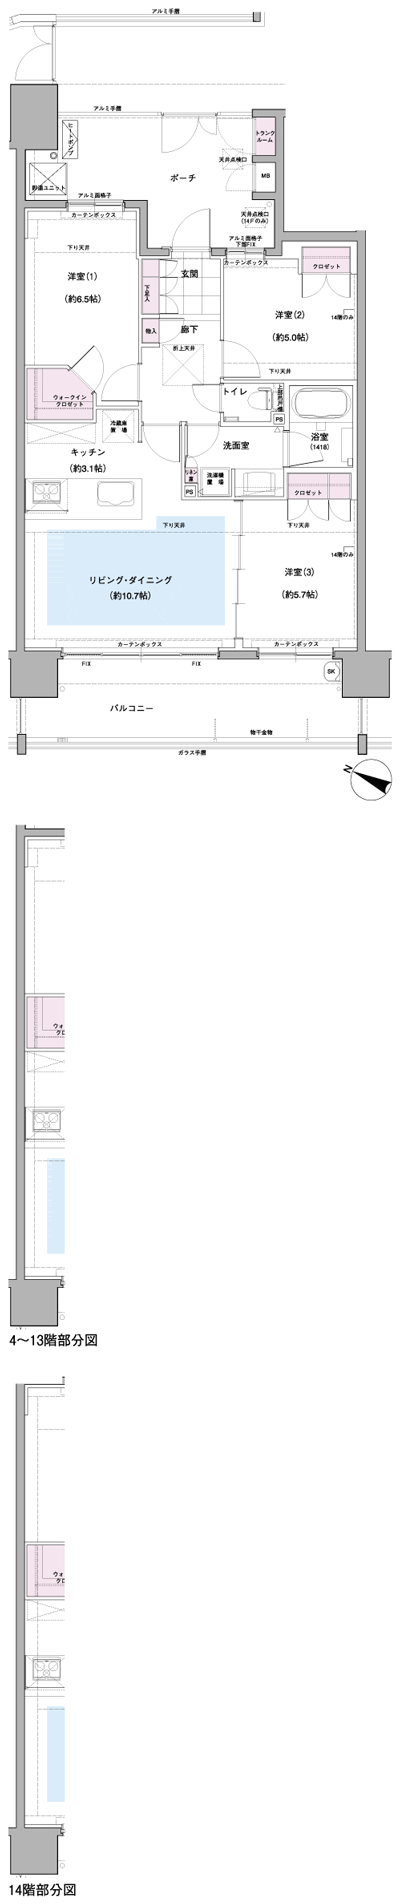 Floor: 3LDK, occupied area: 69.84 sq m